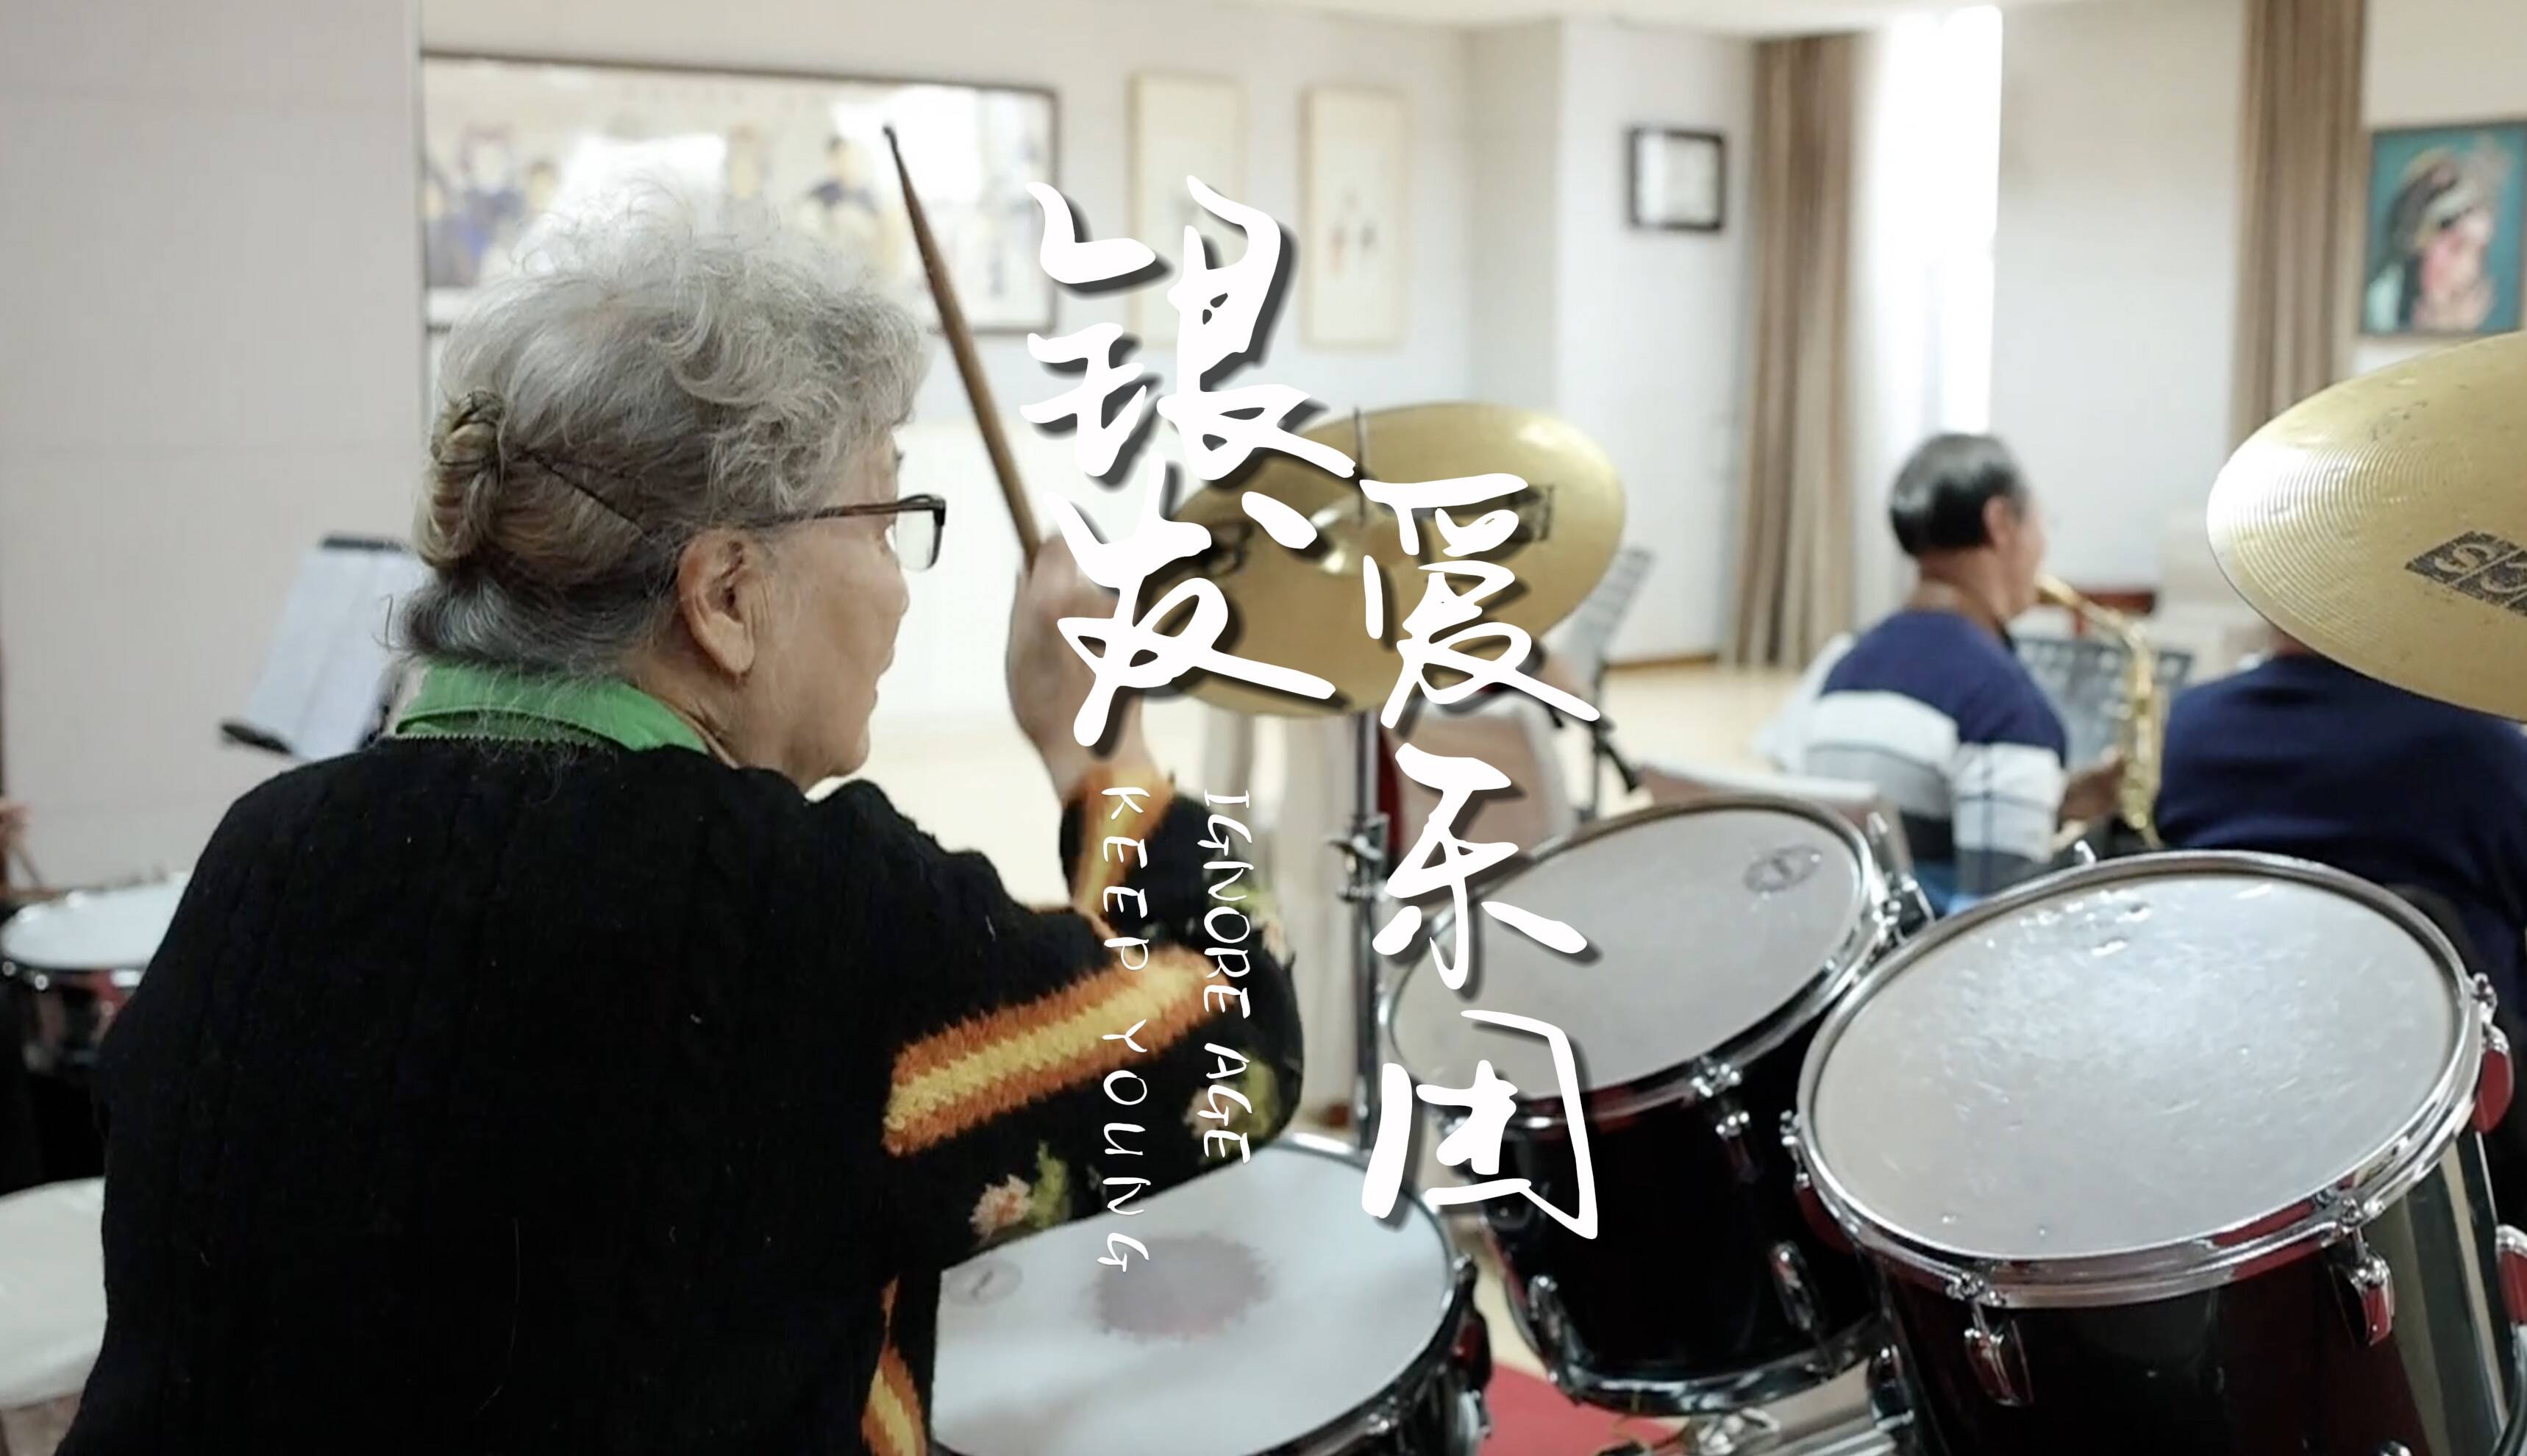 飙高音、玩架子鼓......济南这支平均年龄73岁的银发乐团唱响老年生活“好声音”